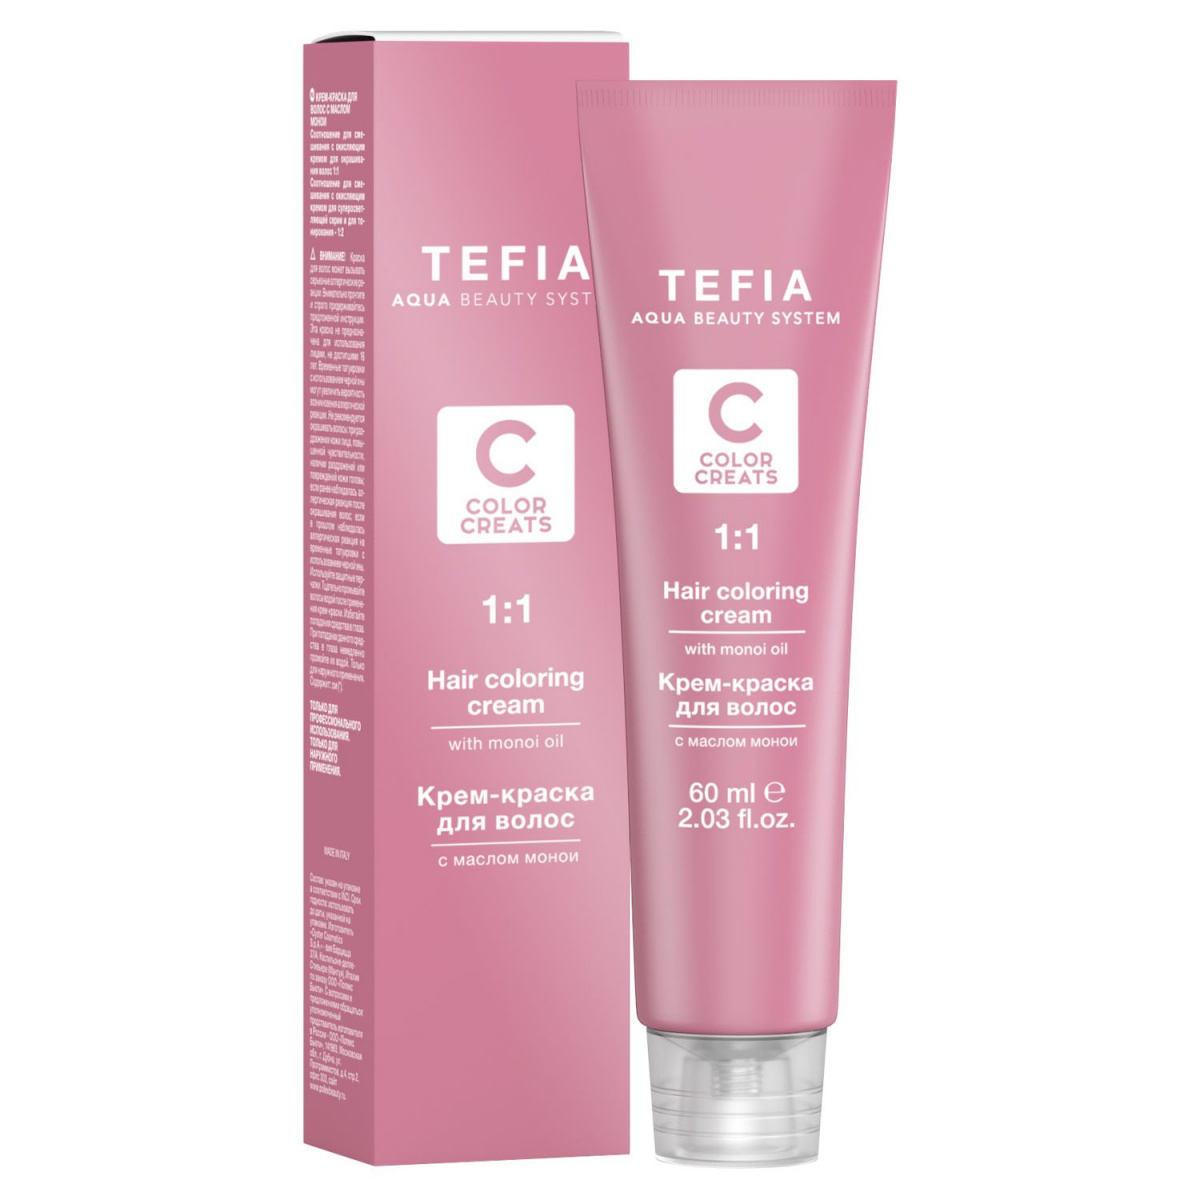 Tefia Color Creats - Крем-краска для волос с маслом монои 0.7 фиолетовый 60 мл Tefia (Италия) купить по цене 387 руб.